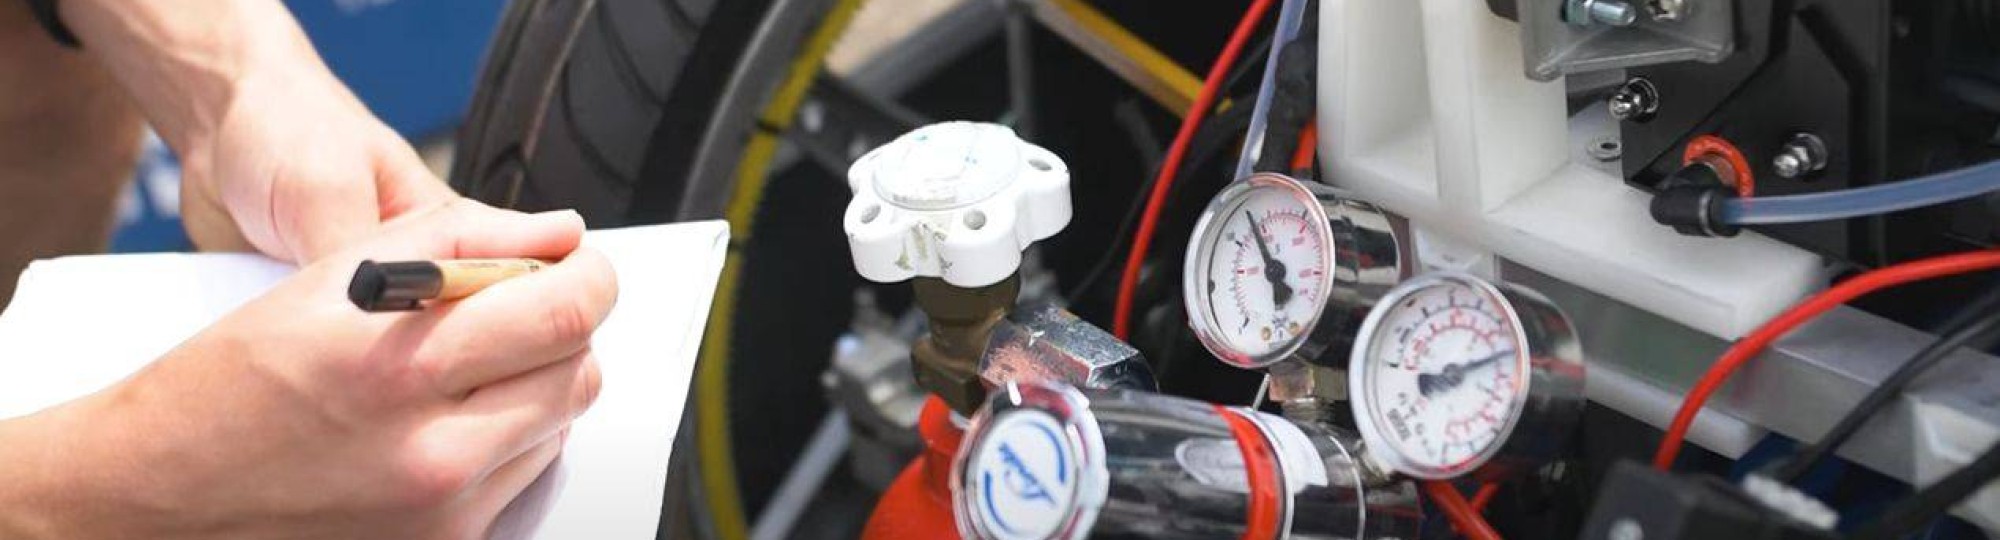 waterstofauto Hydromotive controleren amperemeters